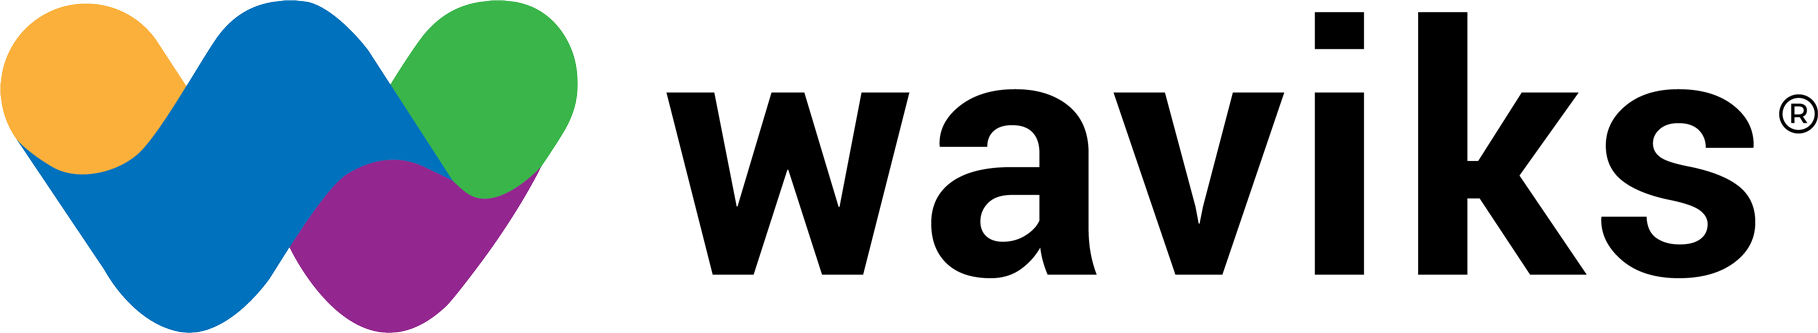 waviks-horizontal-logo-dark